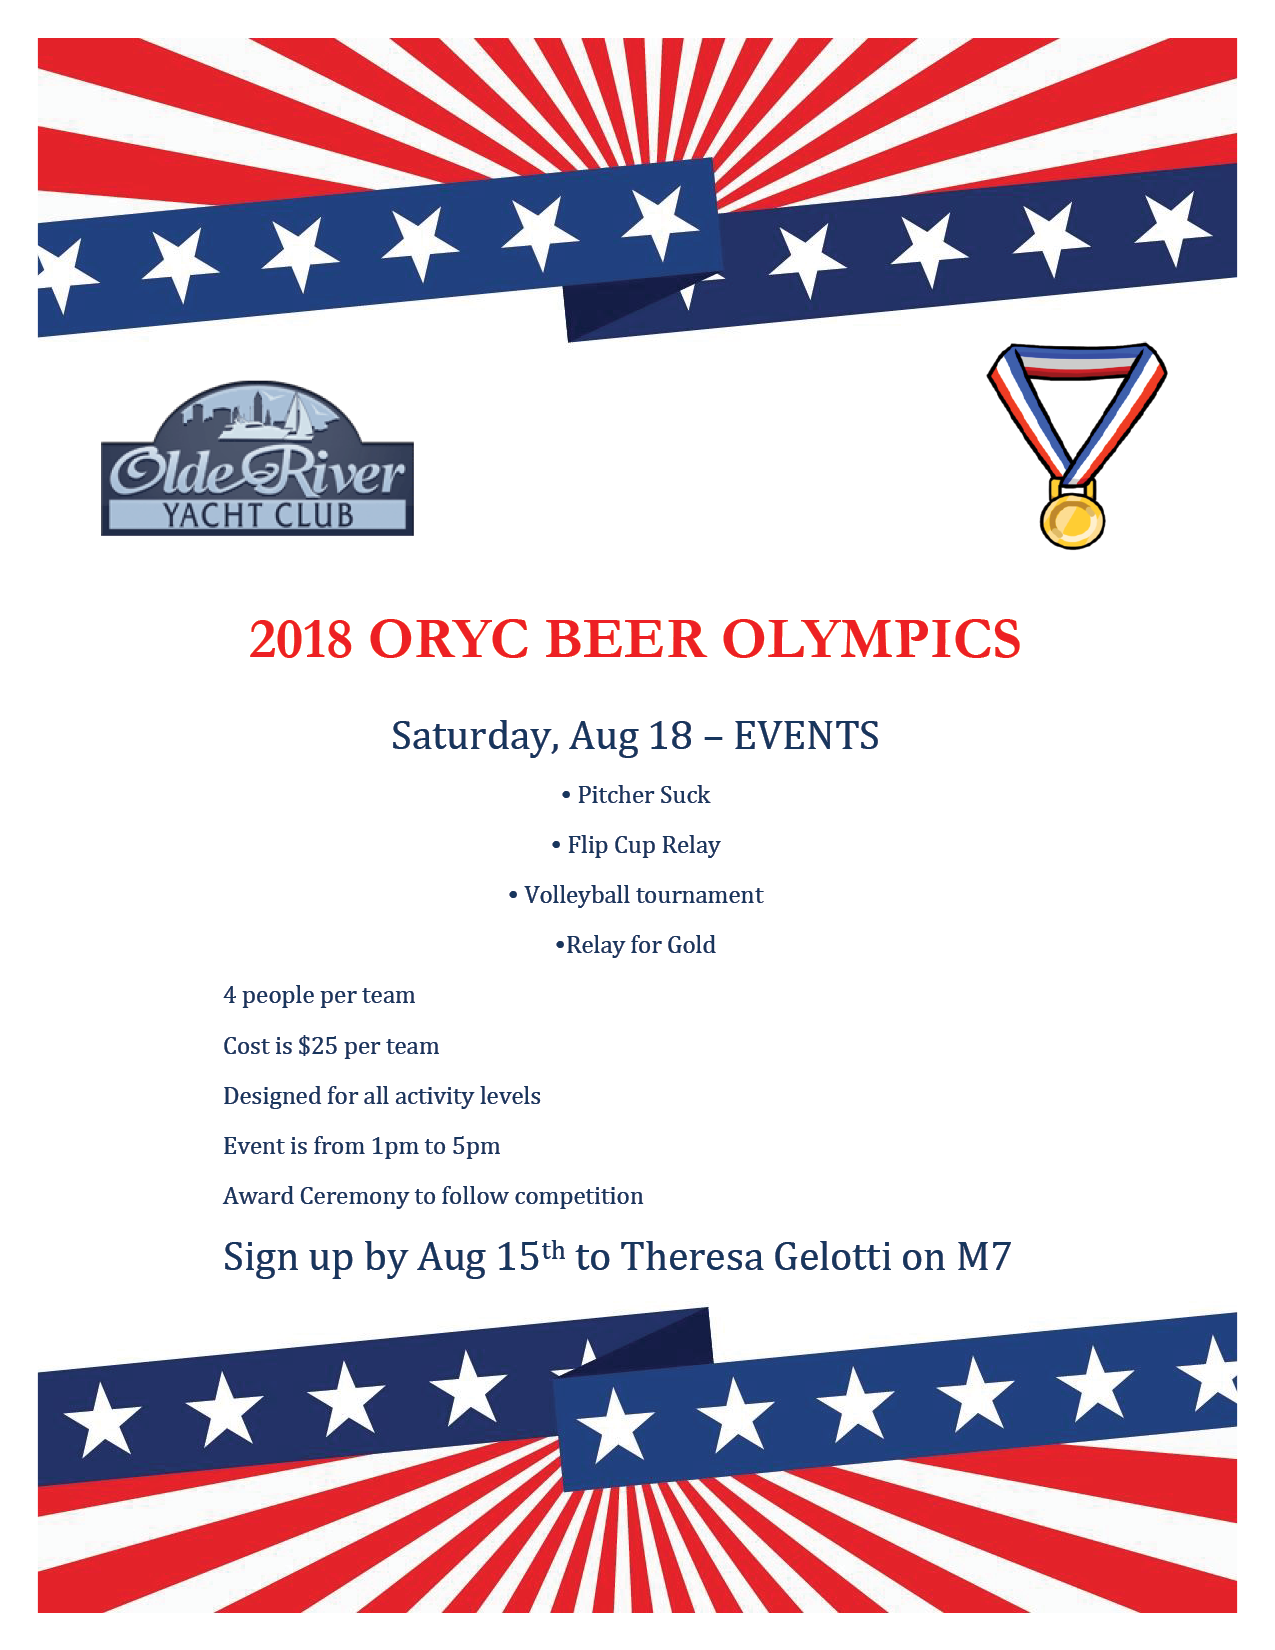 2018 oryc beer olympics